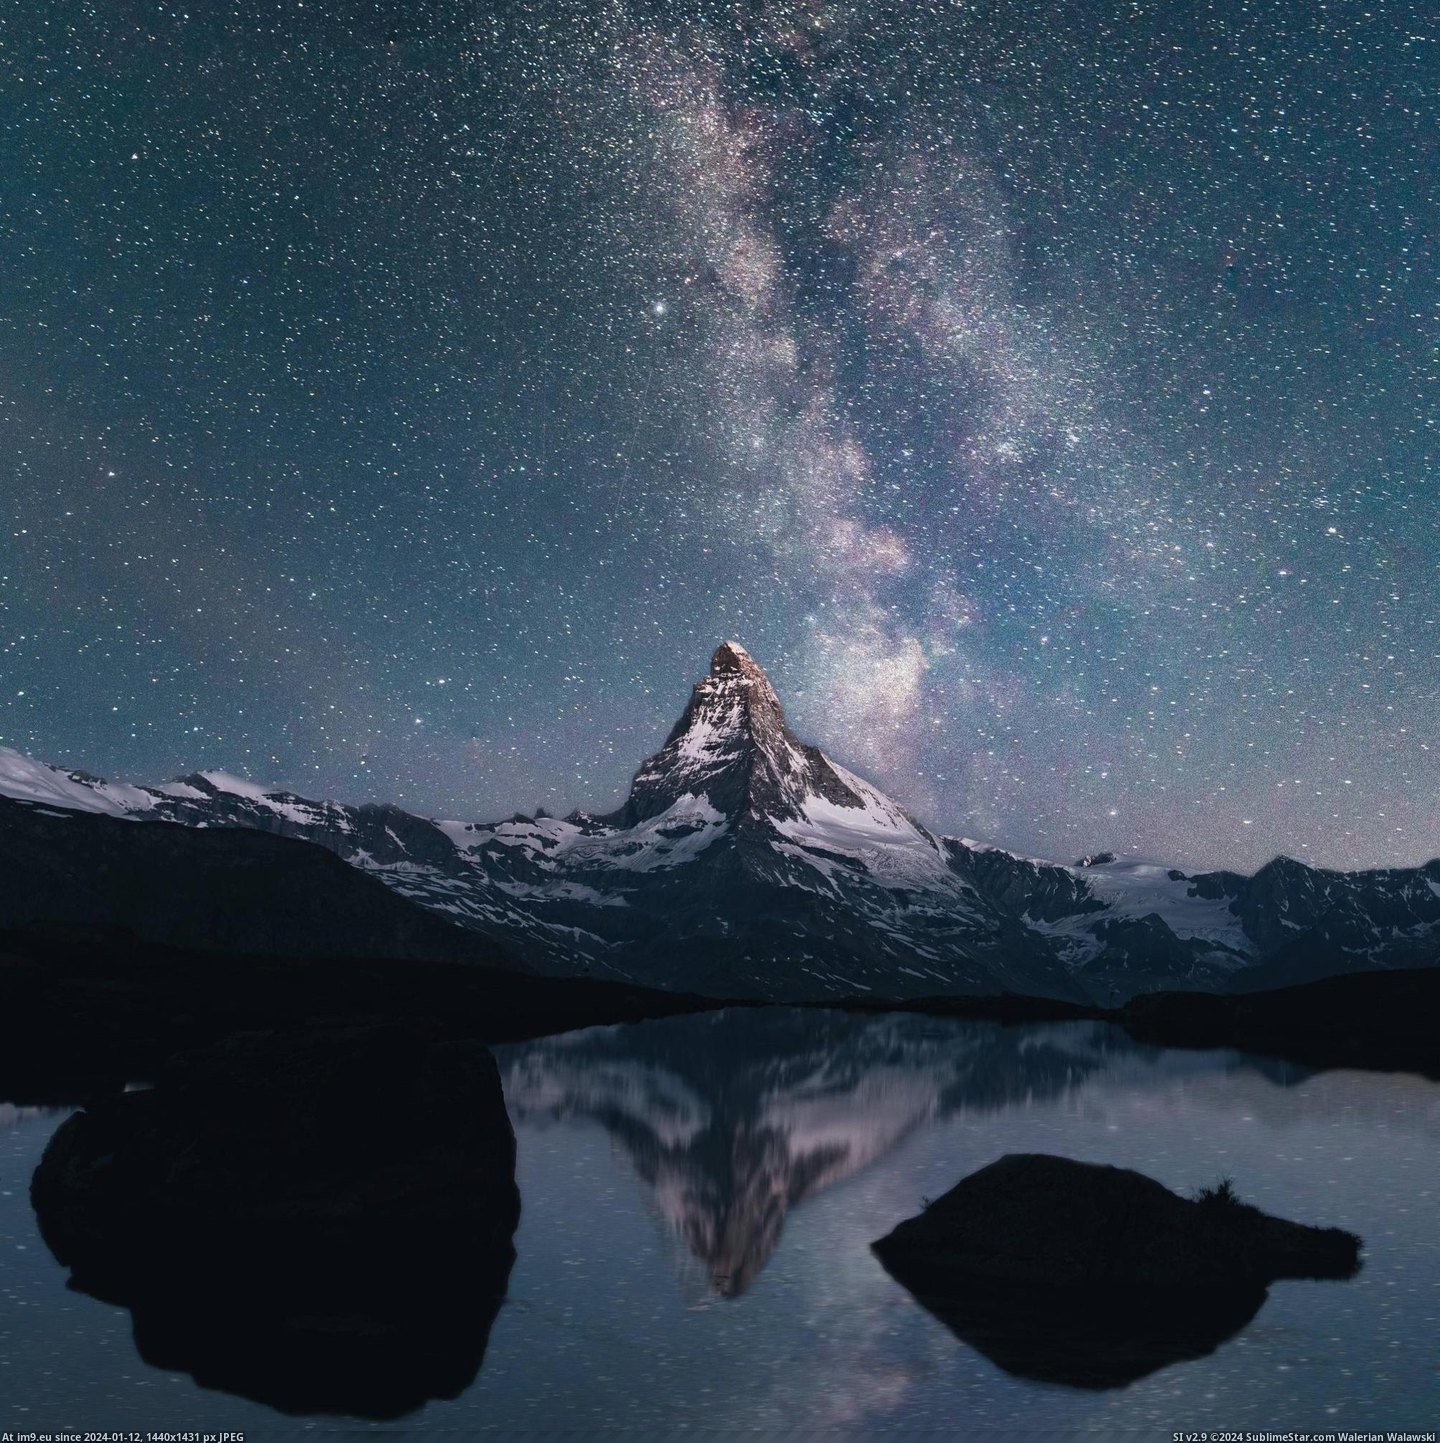 #Time #Night #Matterhorn #Lake #Switzerland [Earthporn] The Matterhorn at Night Time. Stelli Lake, Switzerland.  [2008x2008] Pic. (Bild von album My r/EARTHPORN favs))